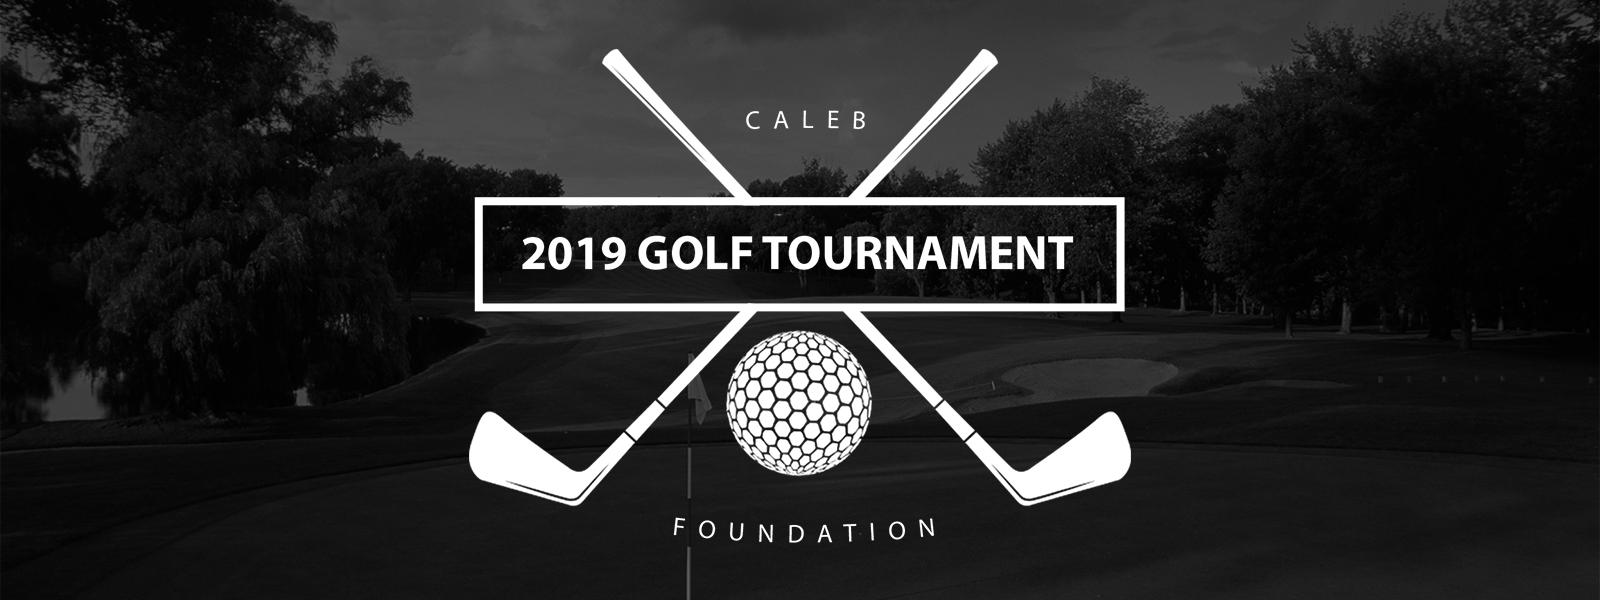 Caleb Foundation Golf Tournament 2019